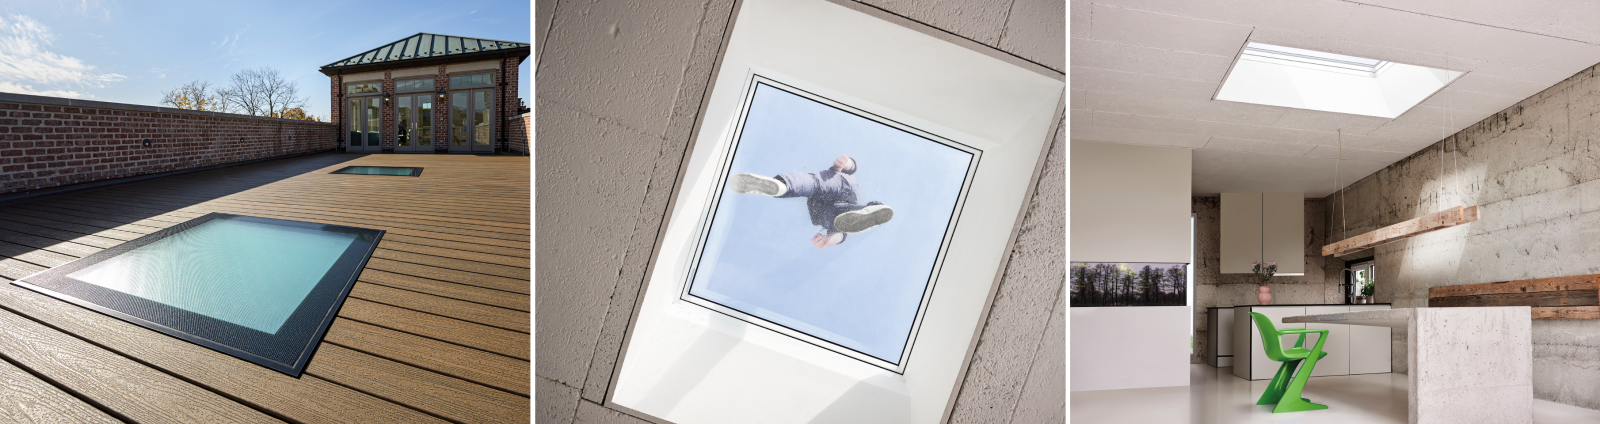 Okna DXW nie wystają ponad powierzchnię tarasu, więc można z niego korzystać bez przeszkód, a wpuszczają światło do znajdujących się pod spodem pomieszczeń (fot. FAKRO) 